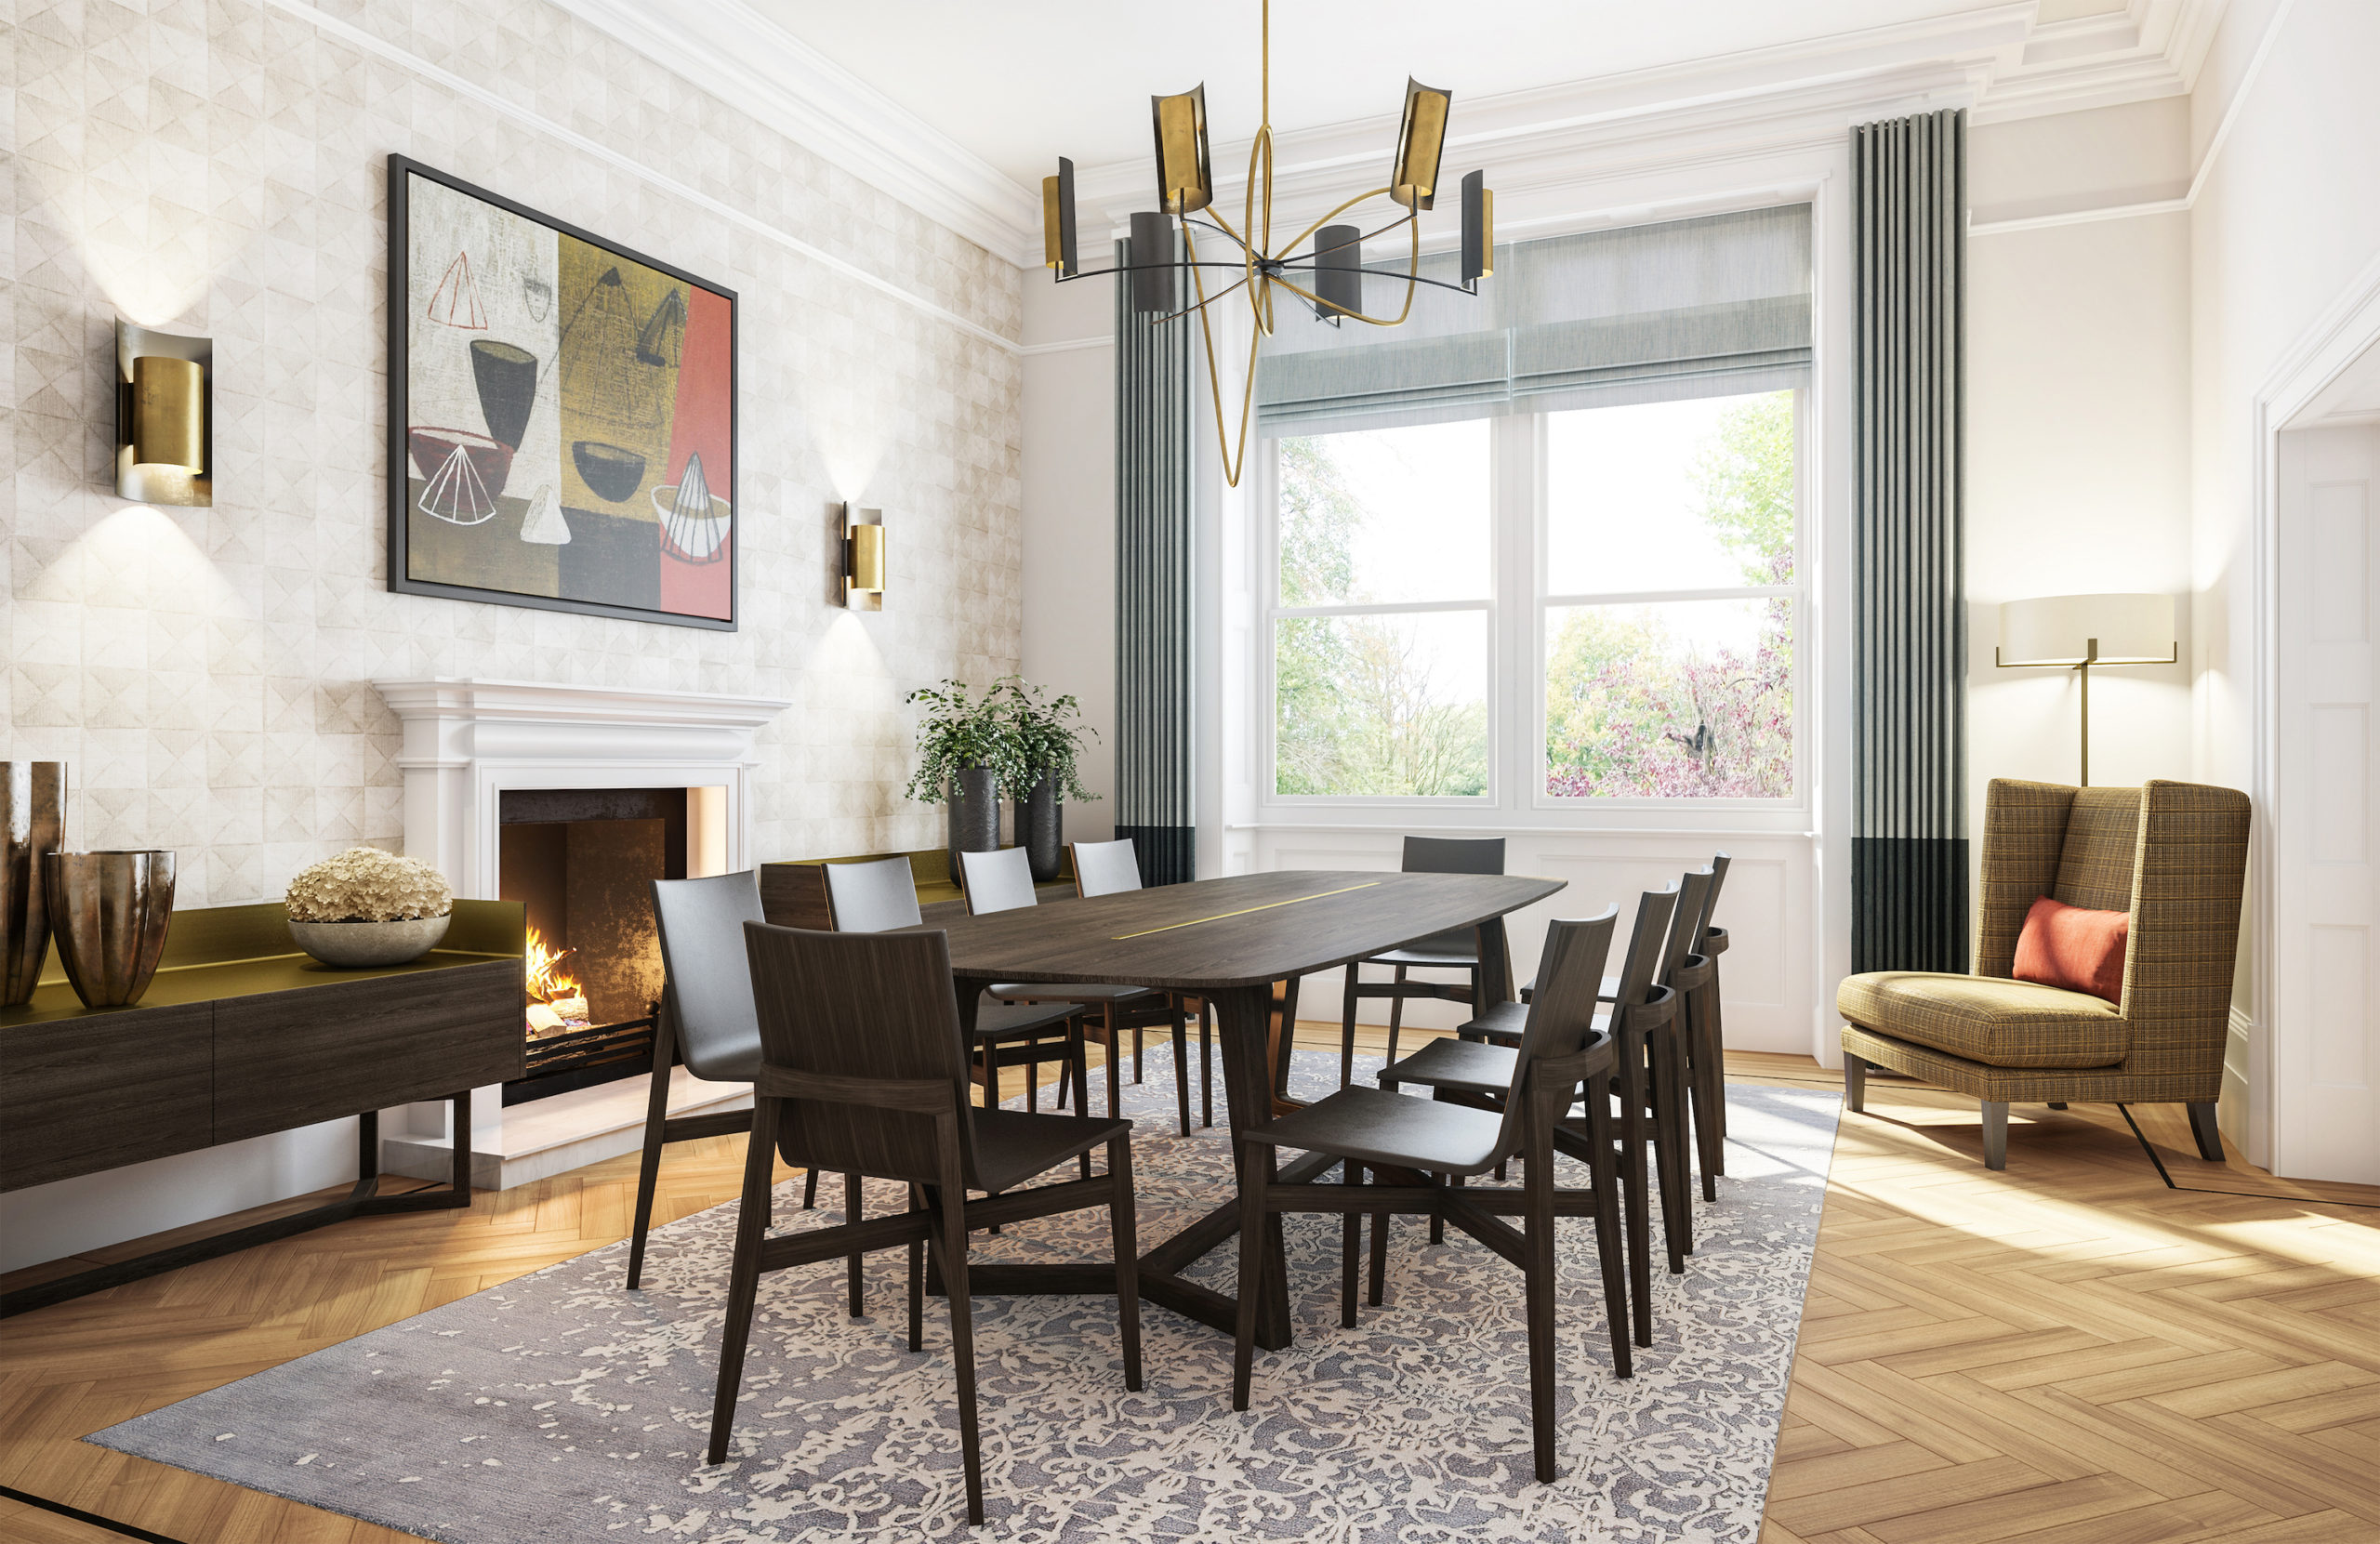 LLI Design - Victorian Villa - Formal Dining Room Interior